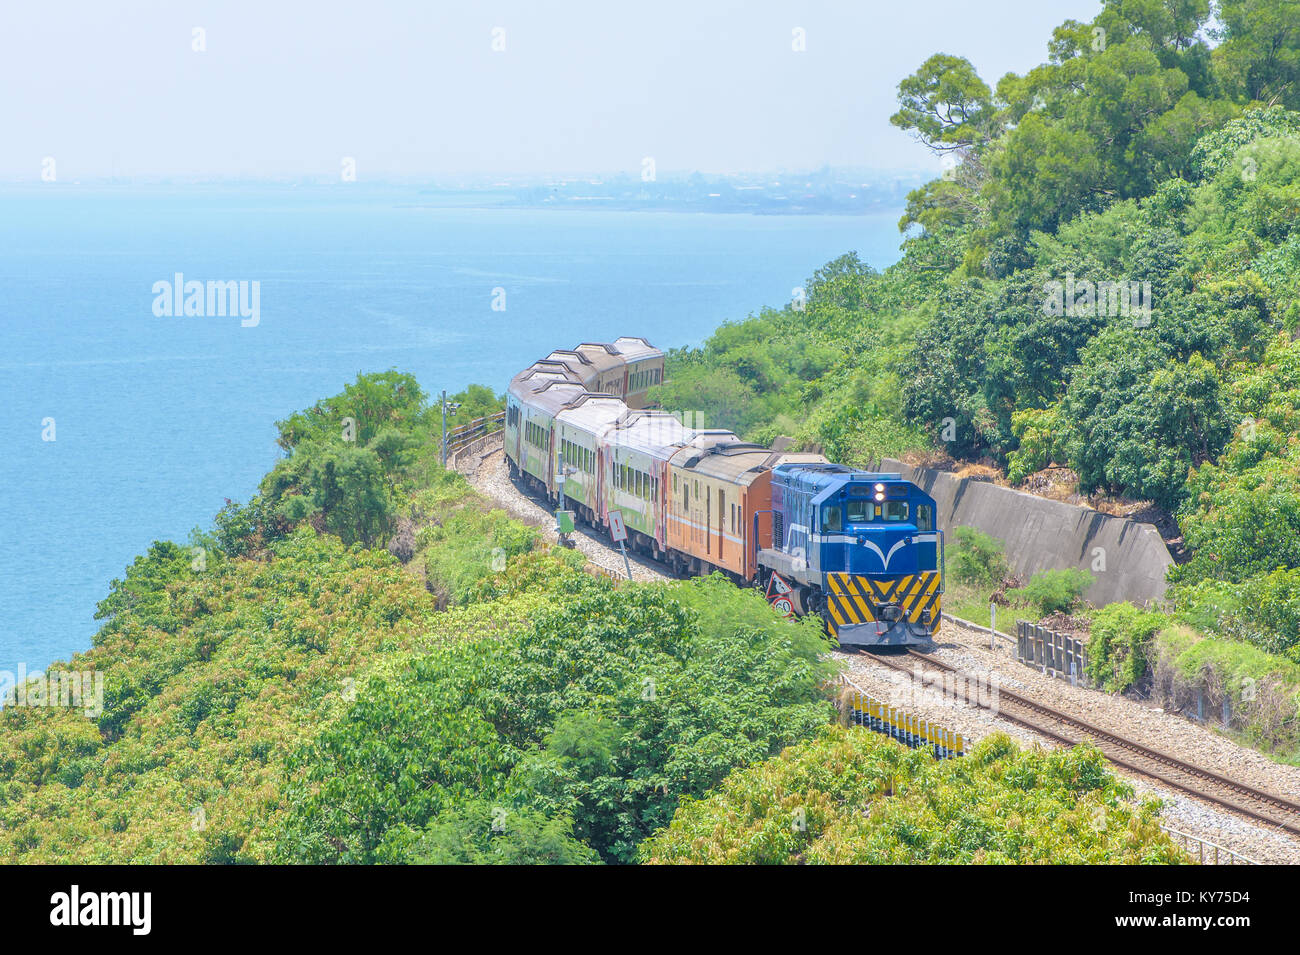 Train on the railway in Taiwan Stock Photo